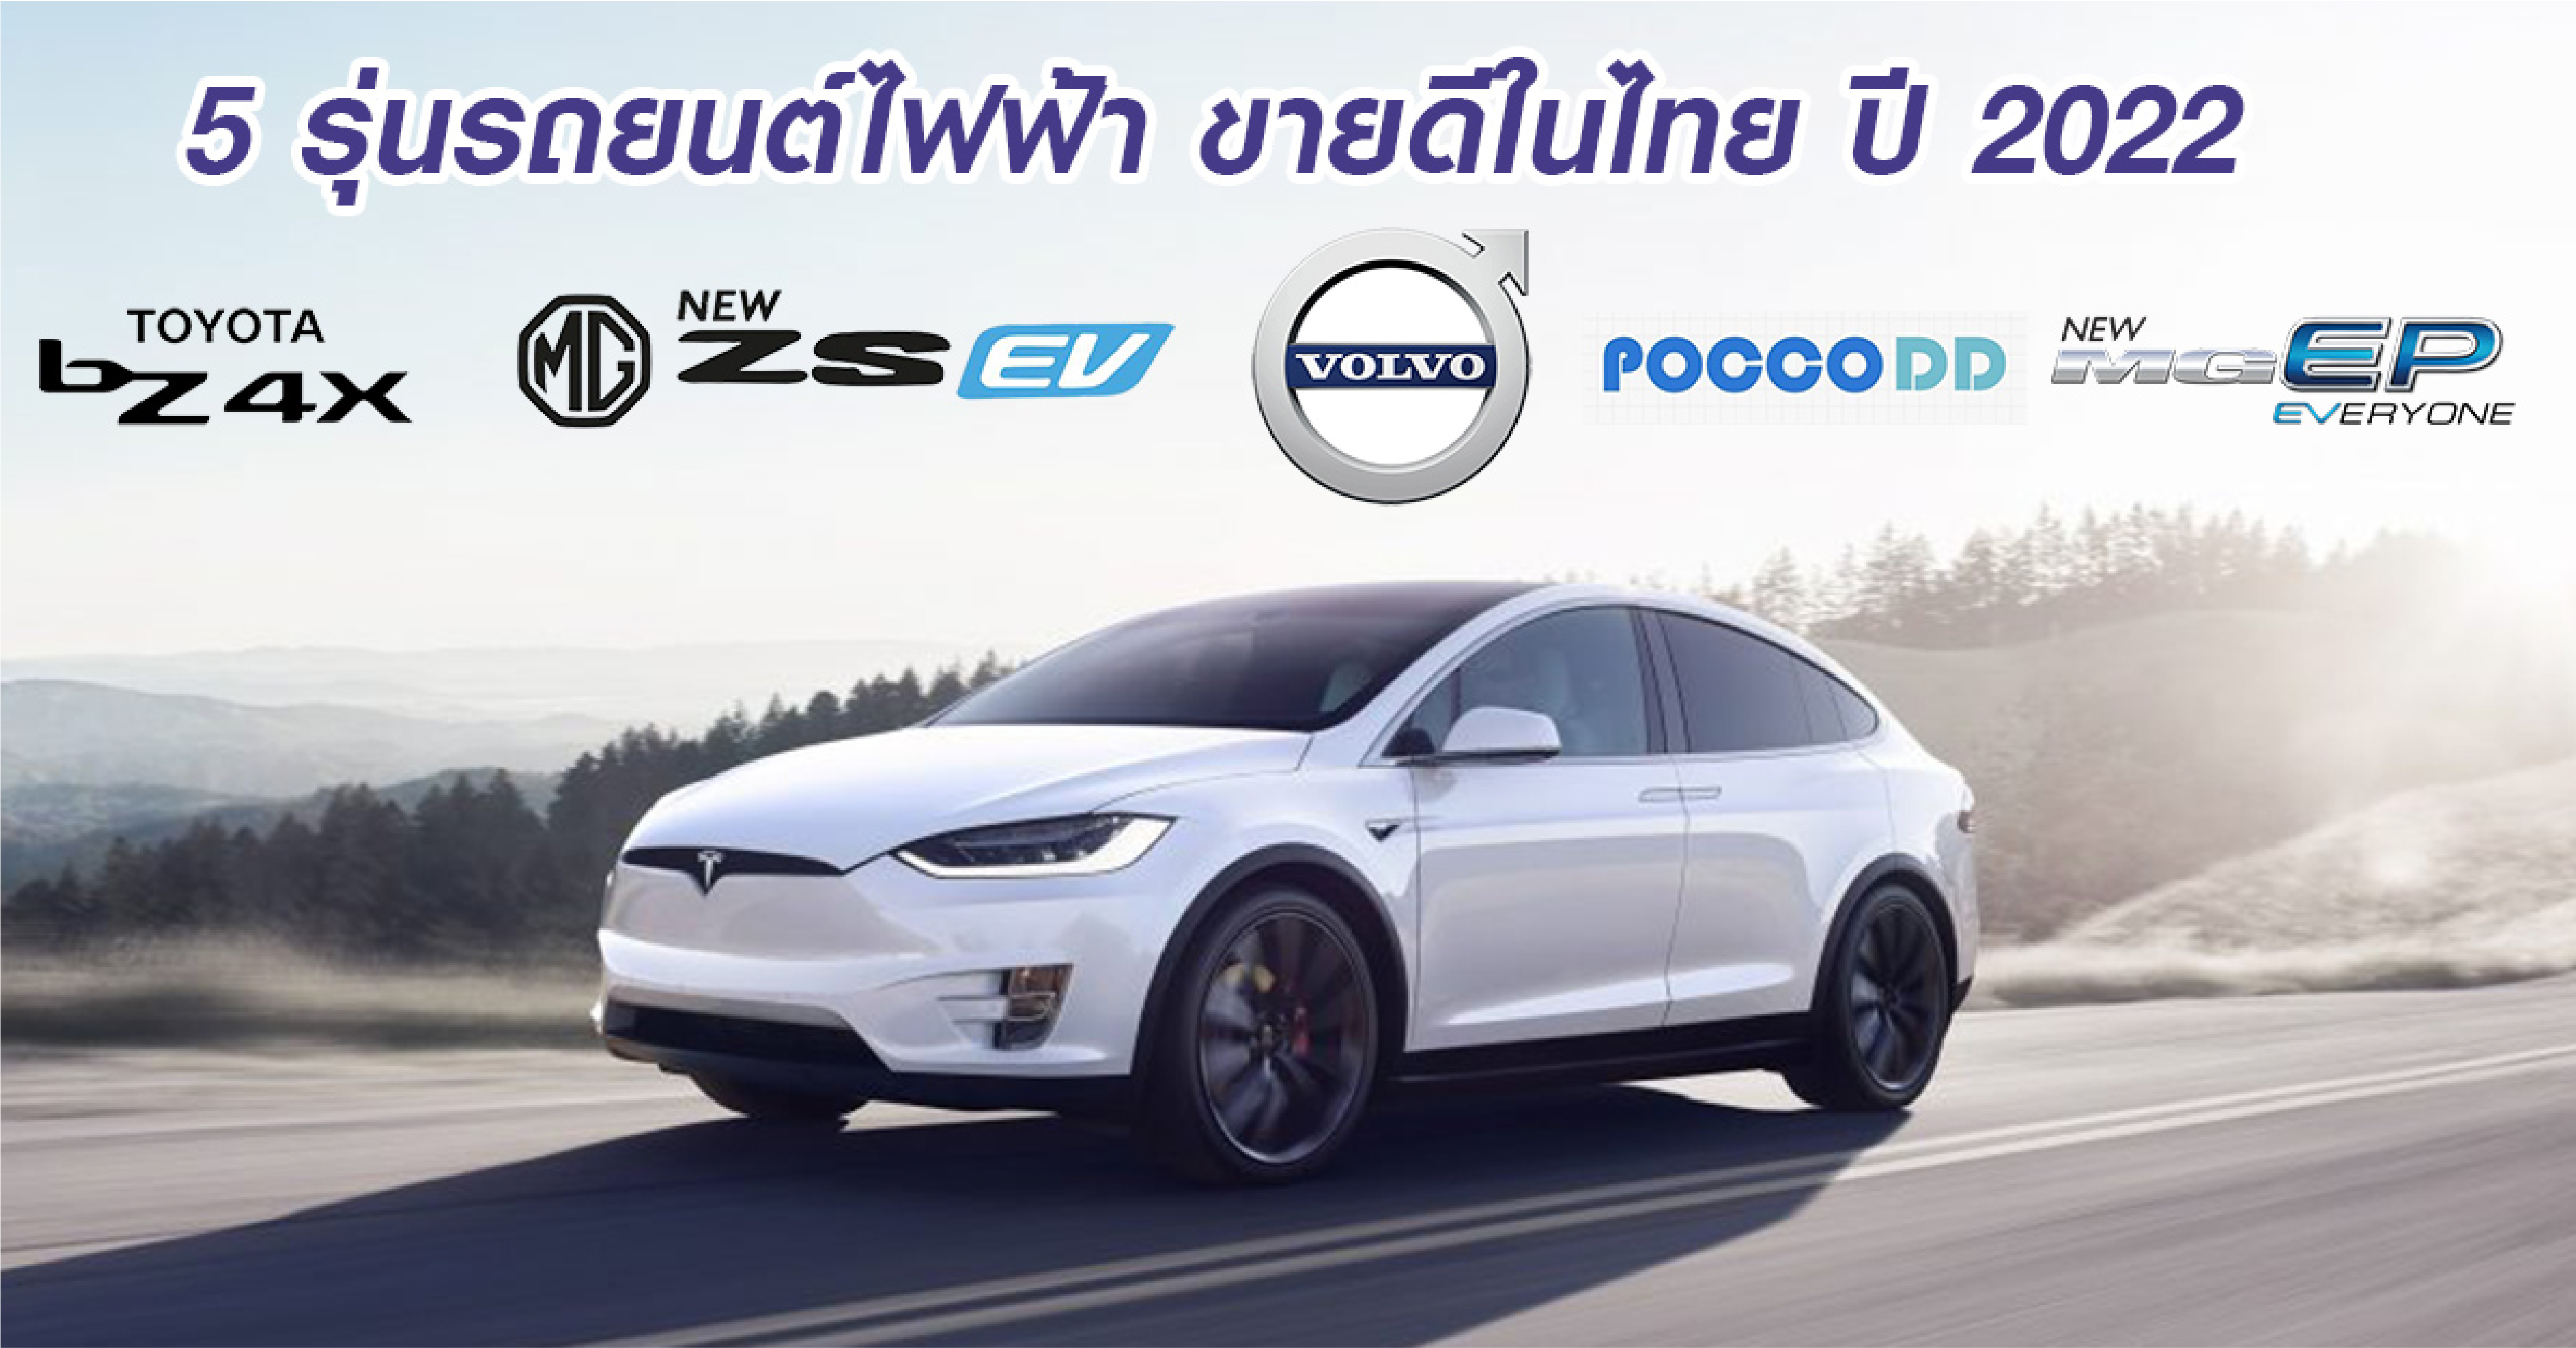 5 รุ่นรถยนต์ไฟฟ้า ขายดีในไทย ปี 2022